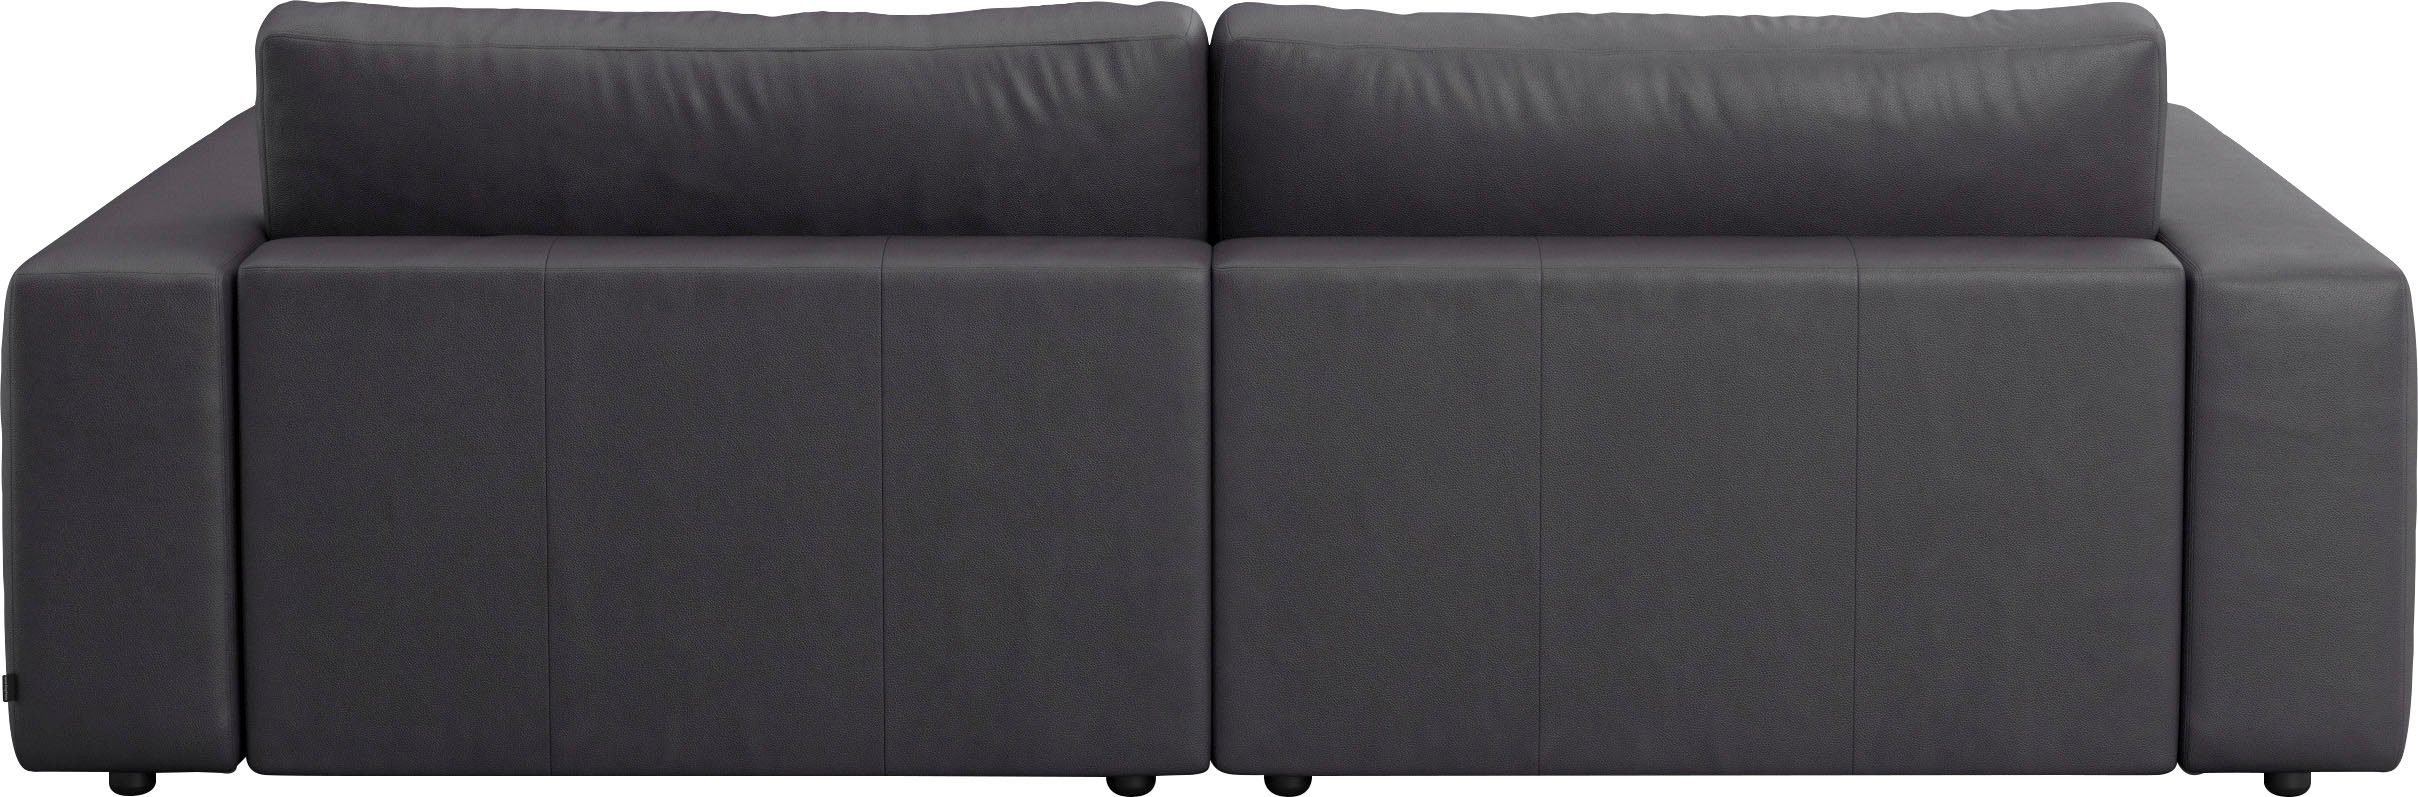 GALLERY M branded by unterschiedlichen LUCIA, und 4 in Nähten, vielen Qualitäten 2,5-Sitzer Big-Sofa Musterring